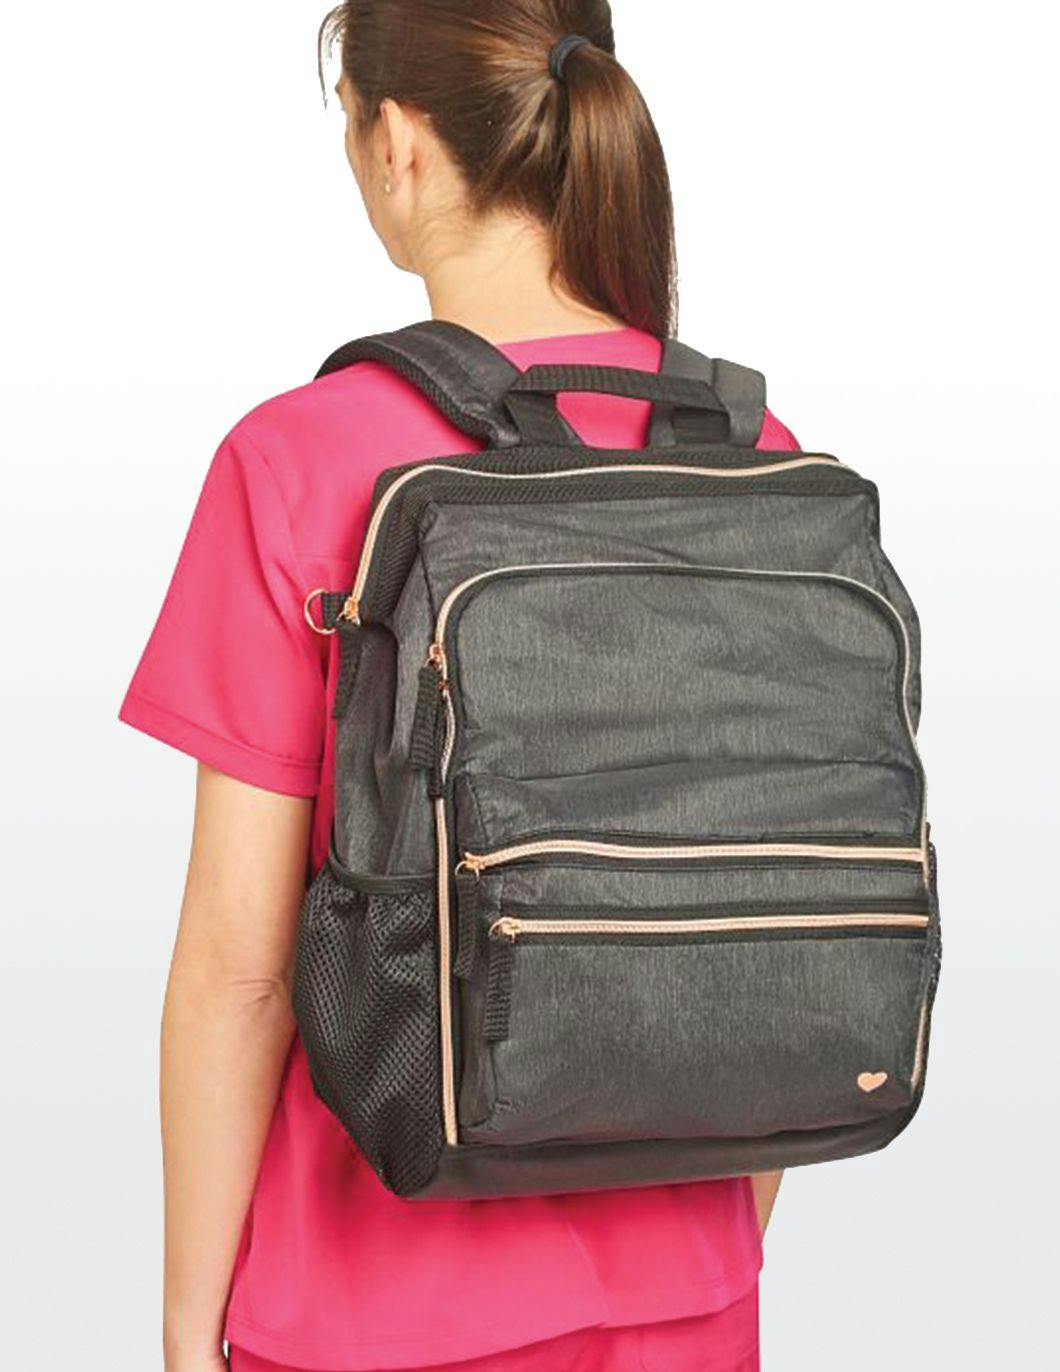 Nursemates-Ultimate-Backpack-Charcoal-Rose-Gold